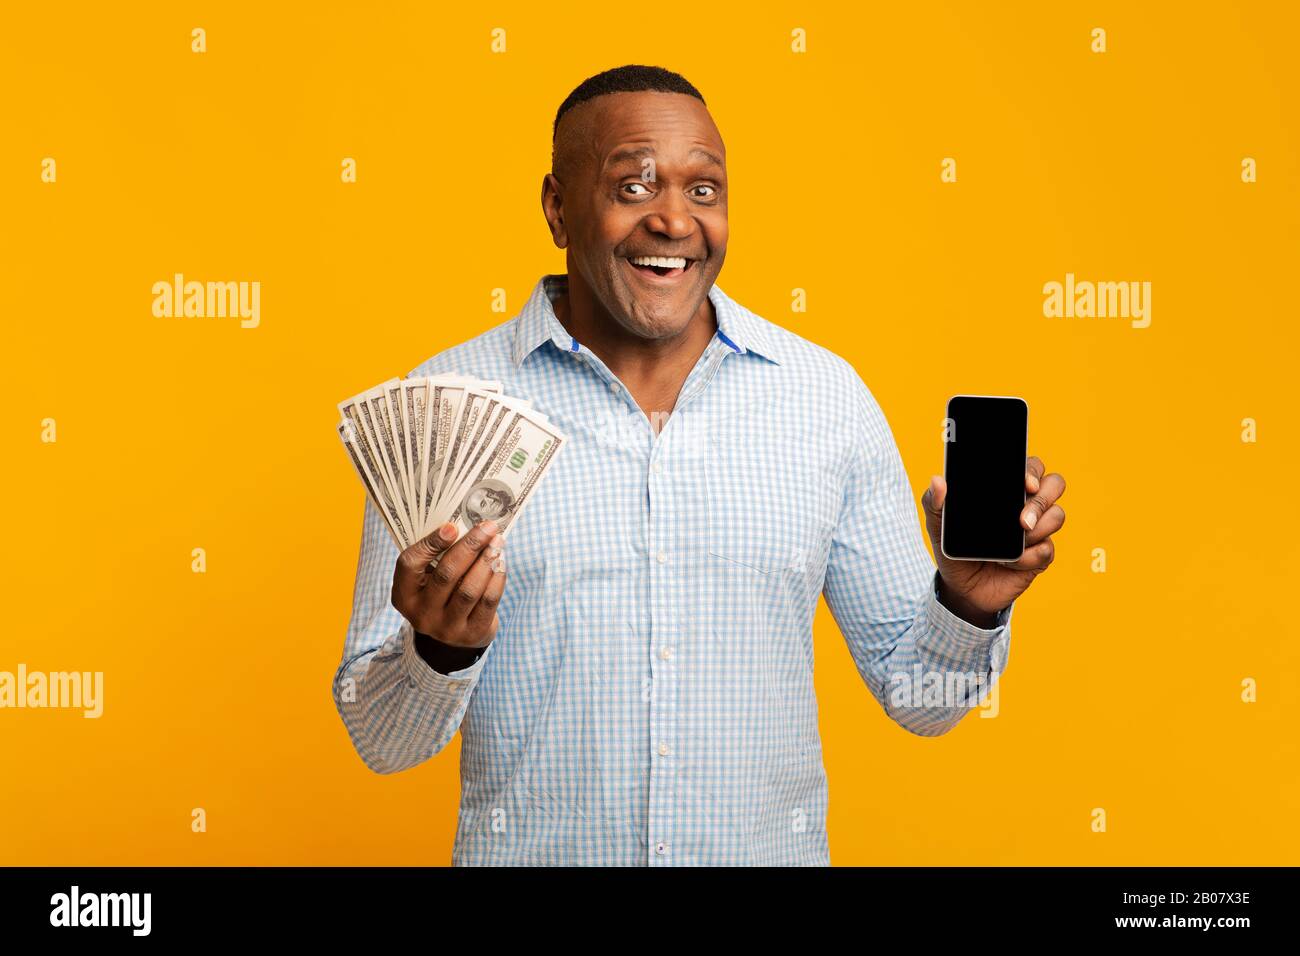 Homme africain mûr tenant beaucoup d'argent et de téléphone portable Banque D'Images